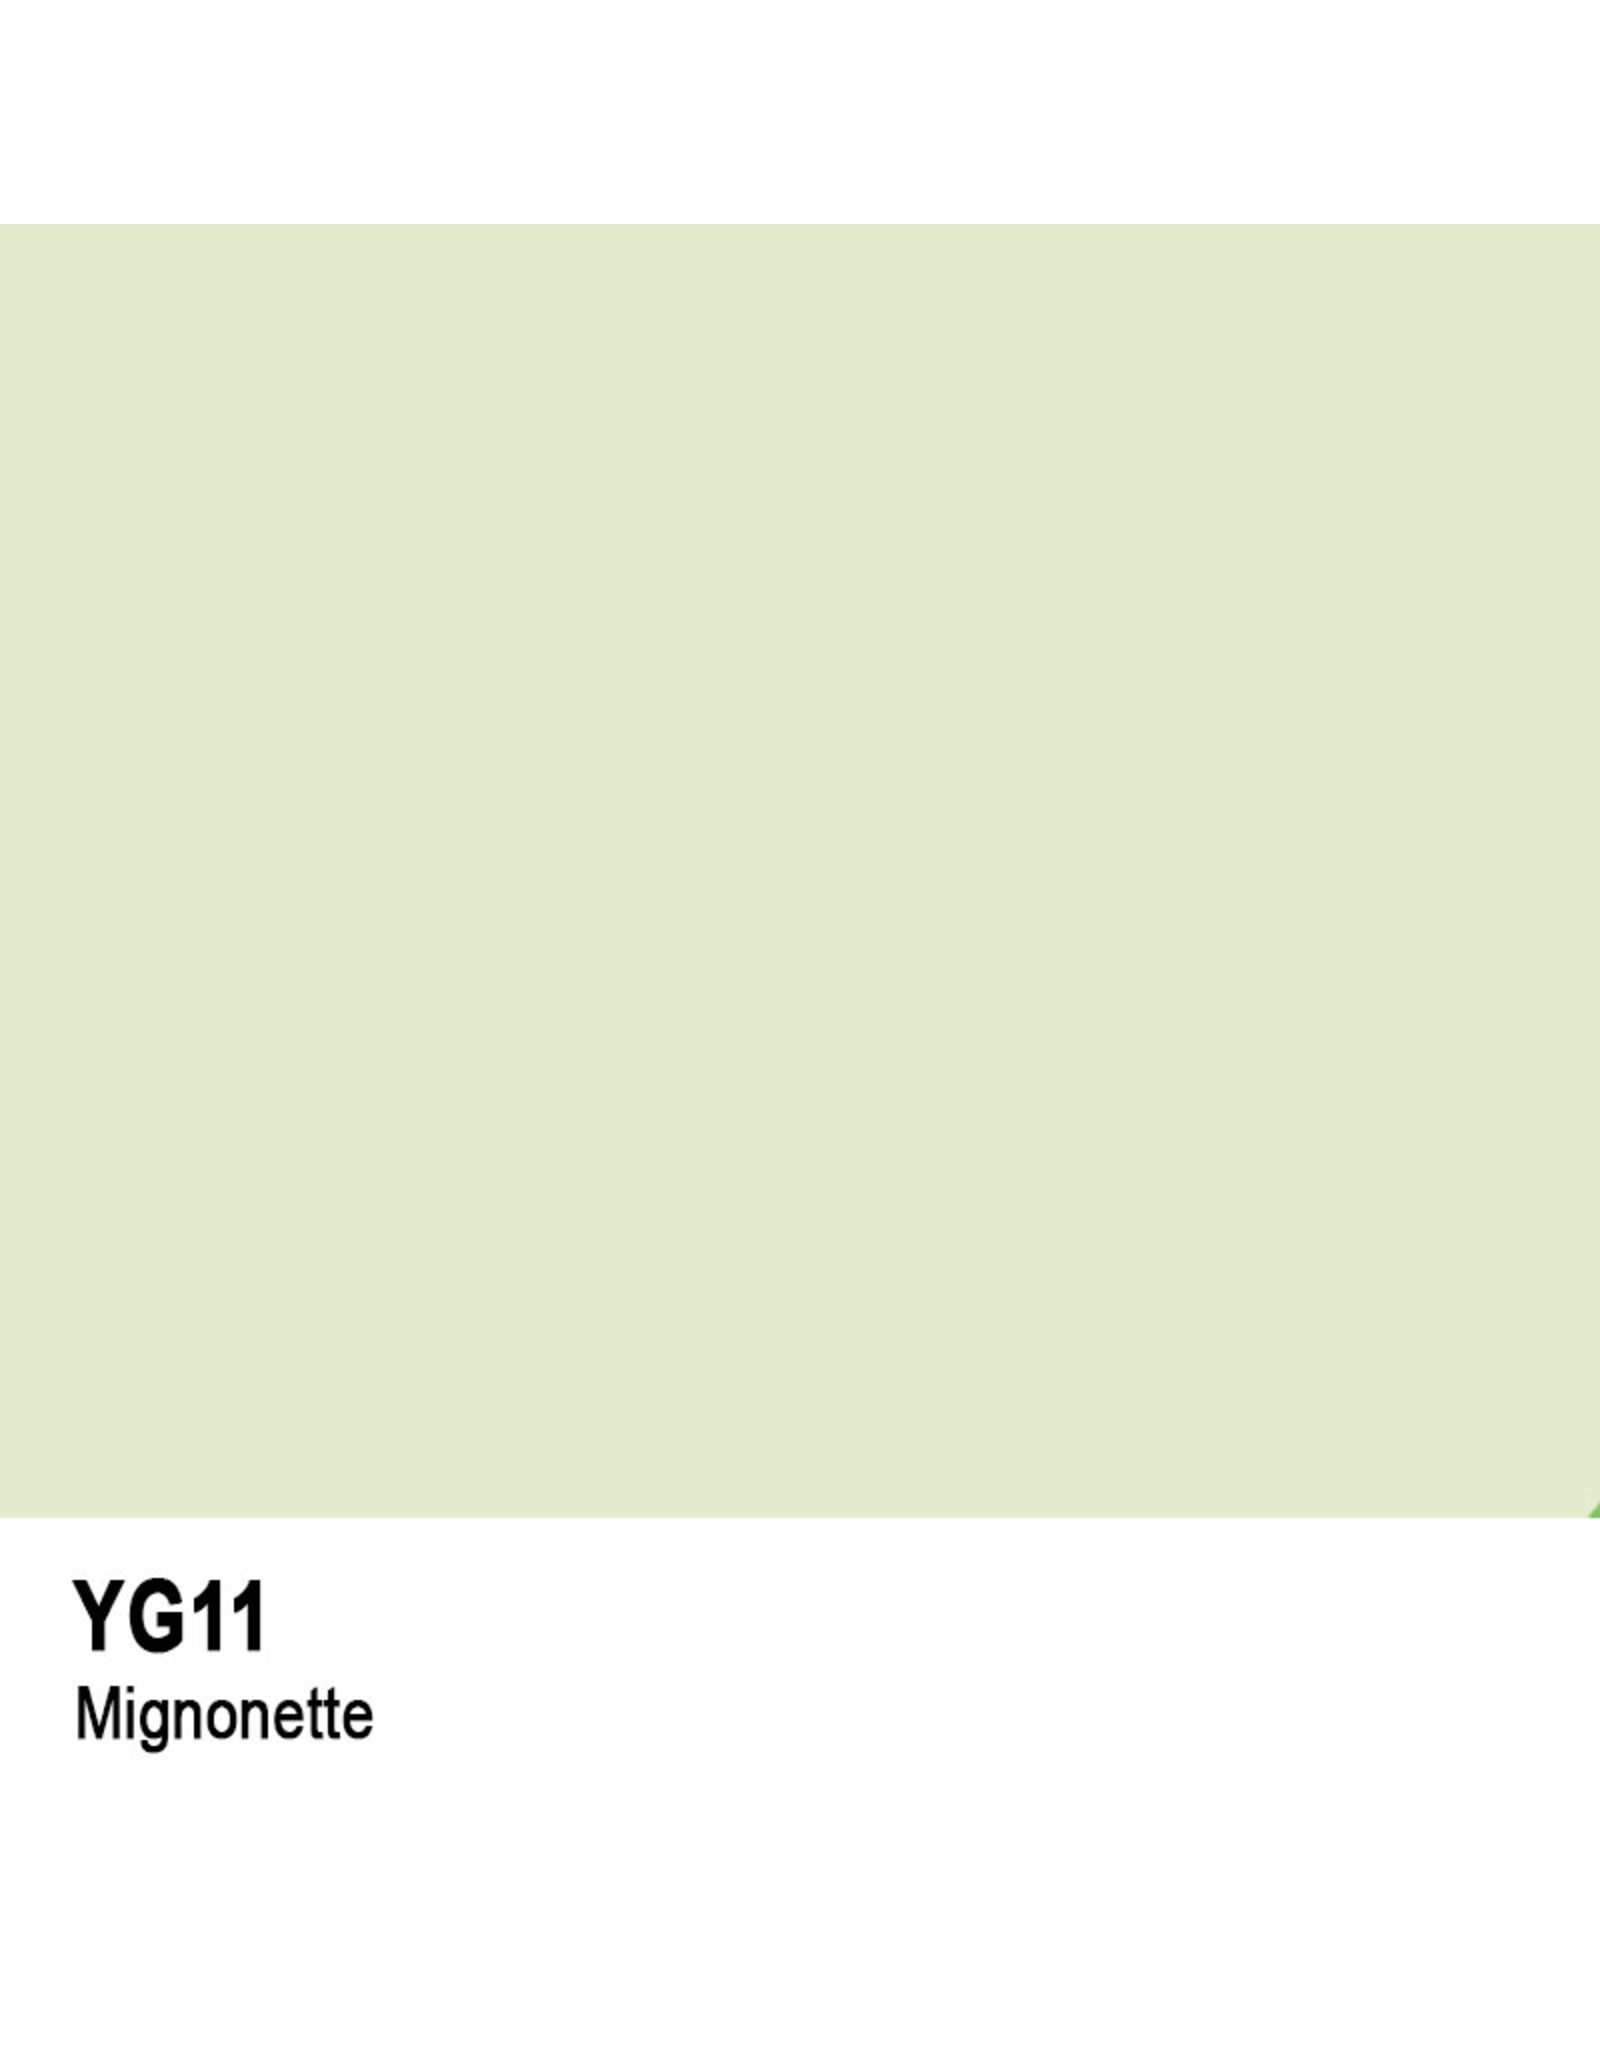 COPIC COPIC YG11 MIGNONETTE SKETCH MARKER